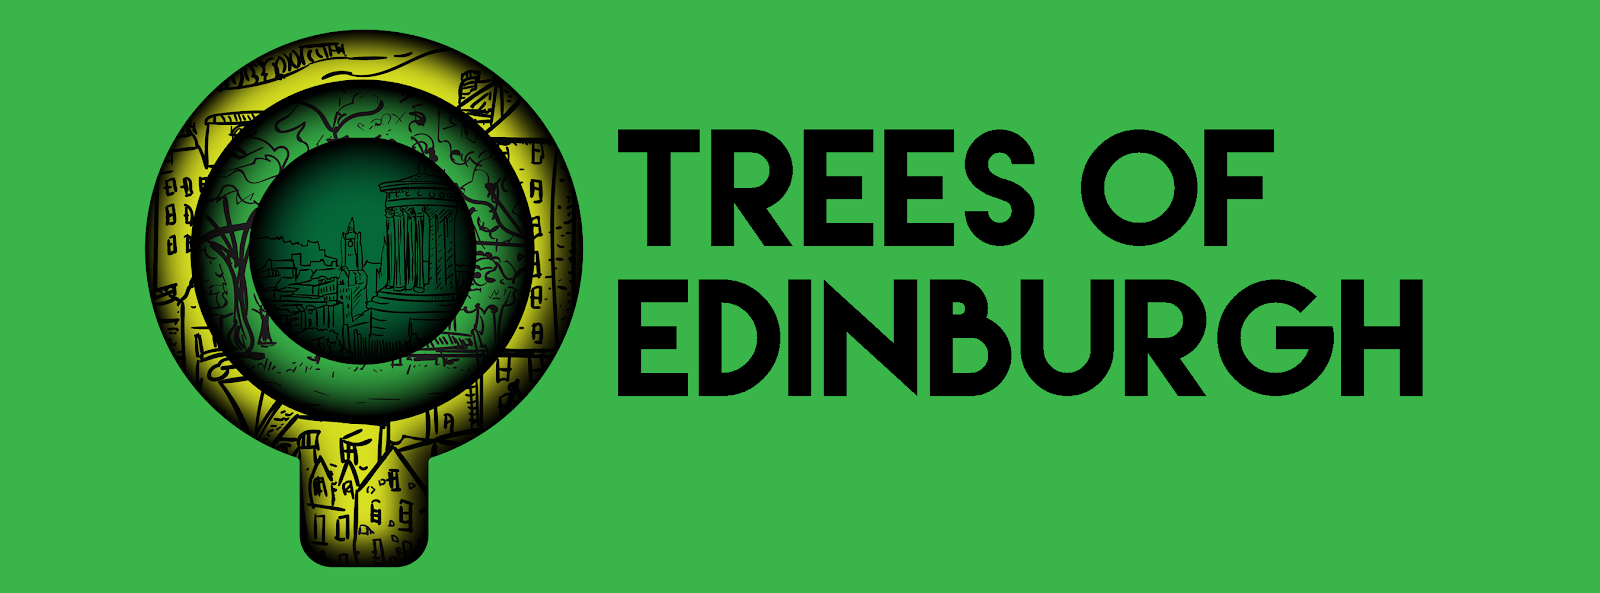 Trees of Edinburgh